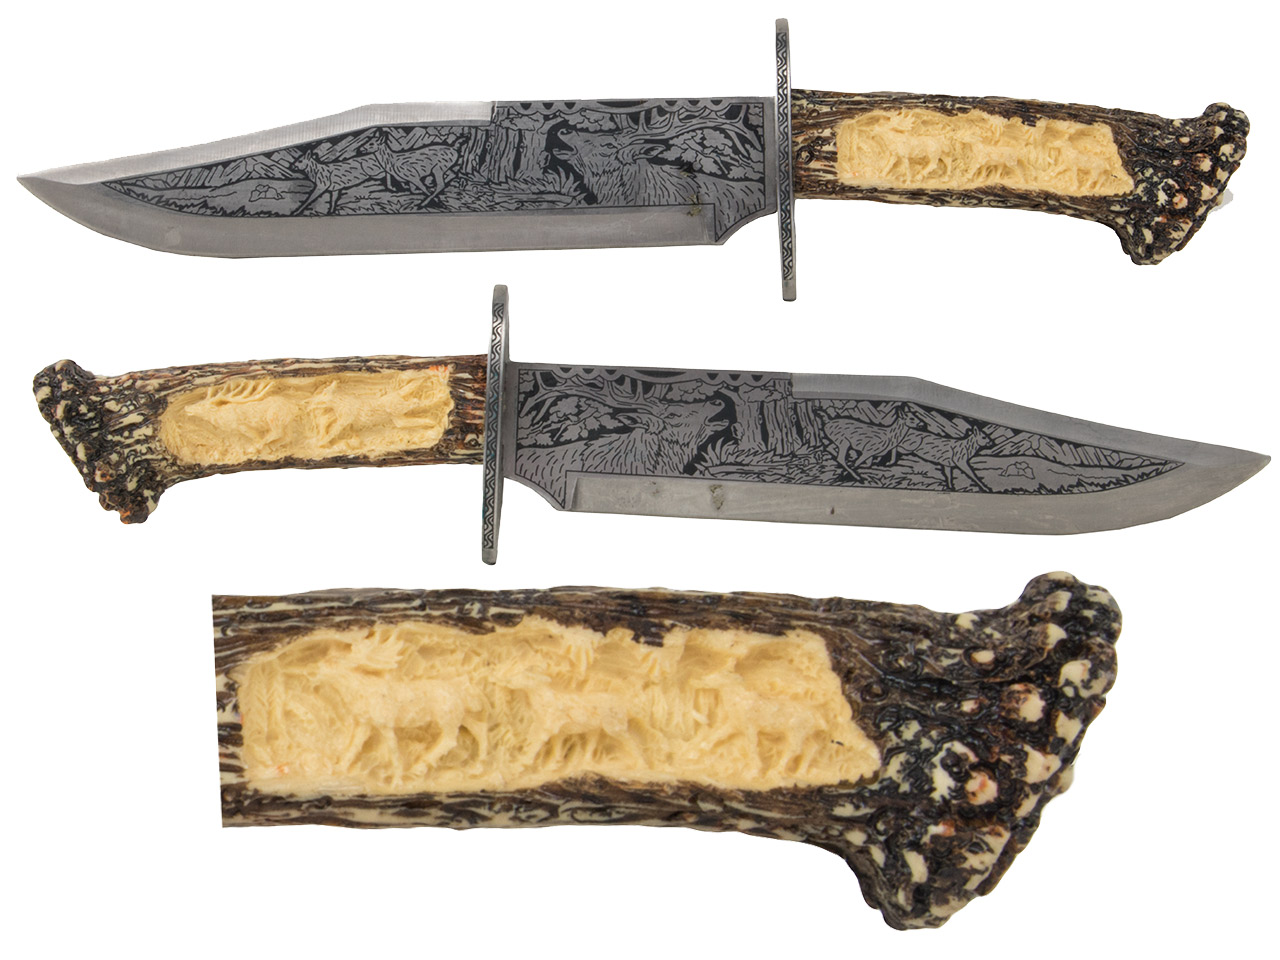 Dekoratives verziertes Messer mit Holzständer Klingenlänge 23 cm (P18)